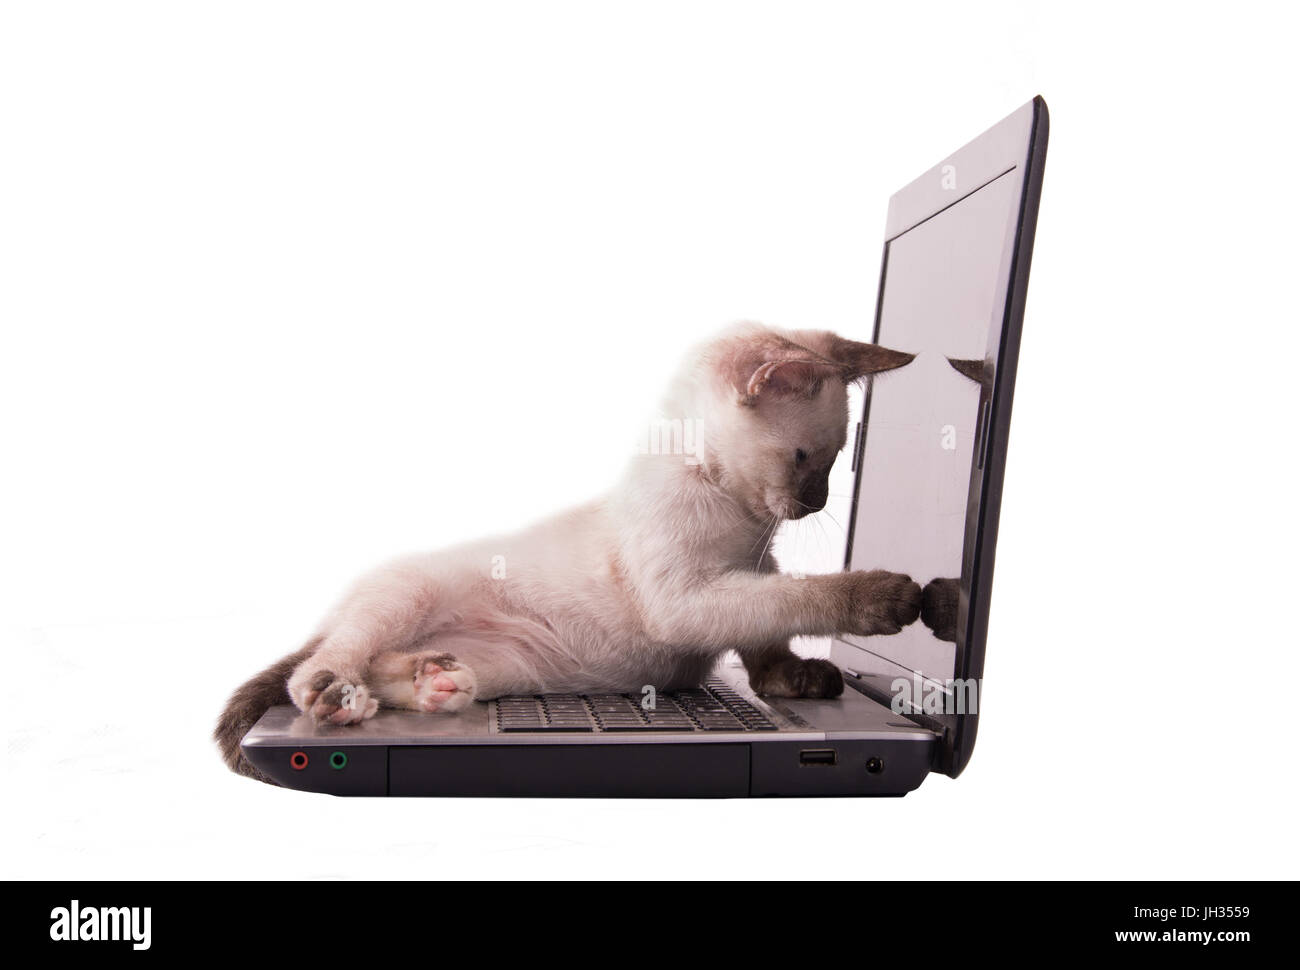 Adorabili Gattini siamese puntare il dito sullo schermo di un computer portatile, isolato su bianco Foto Stock